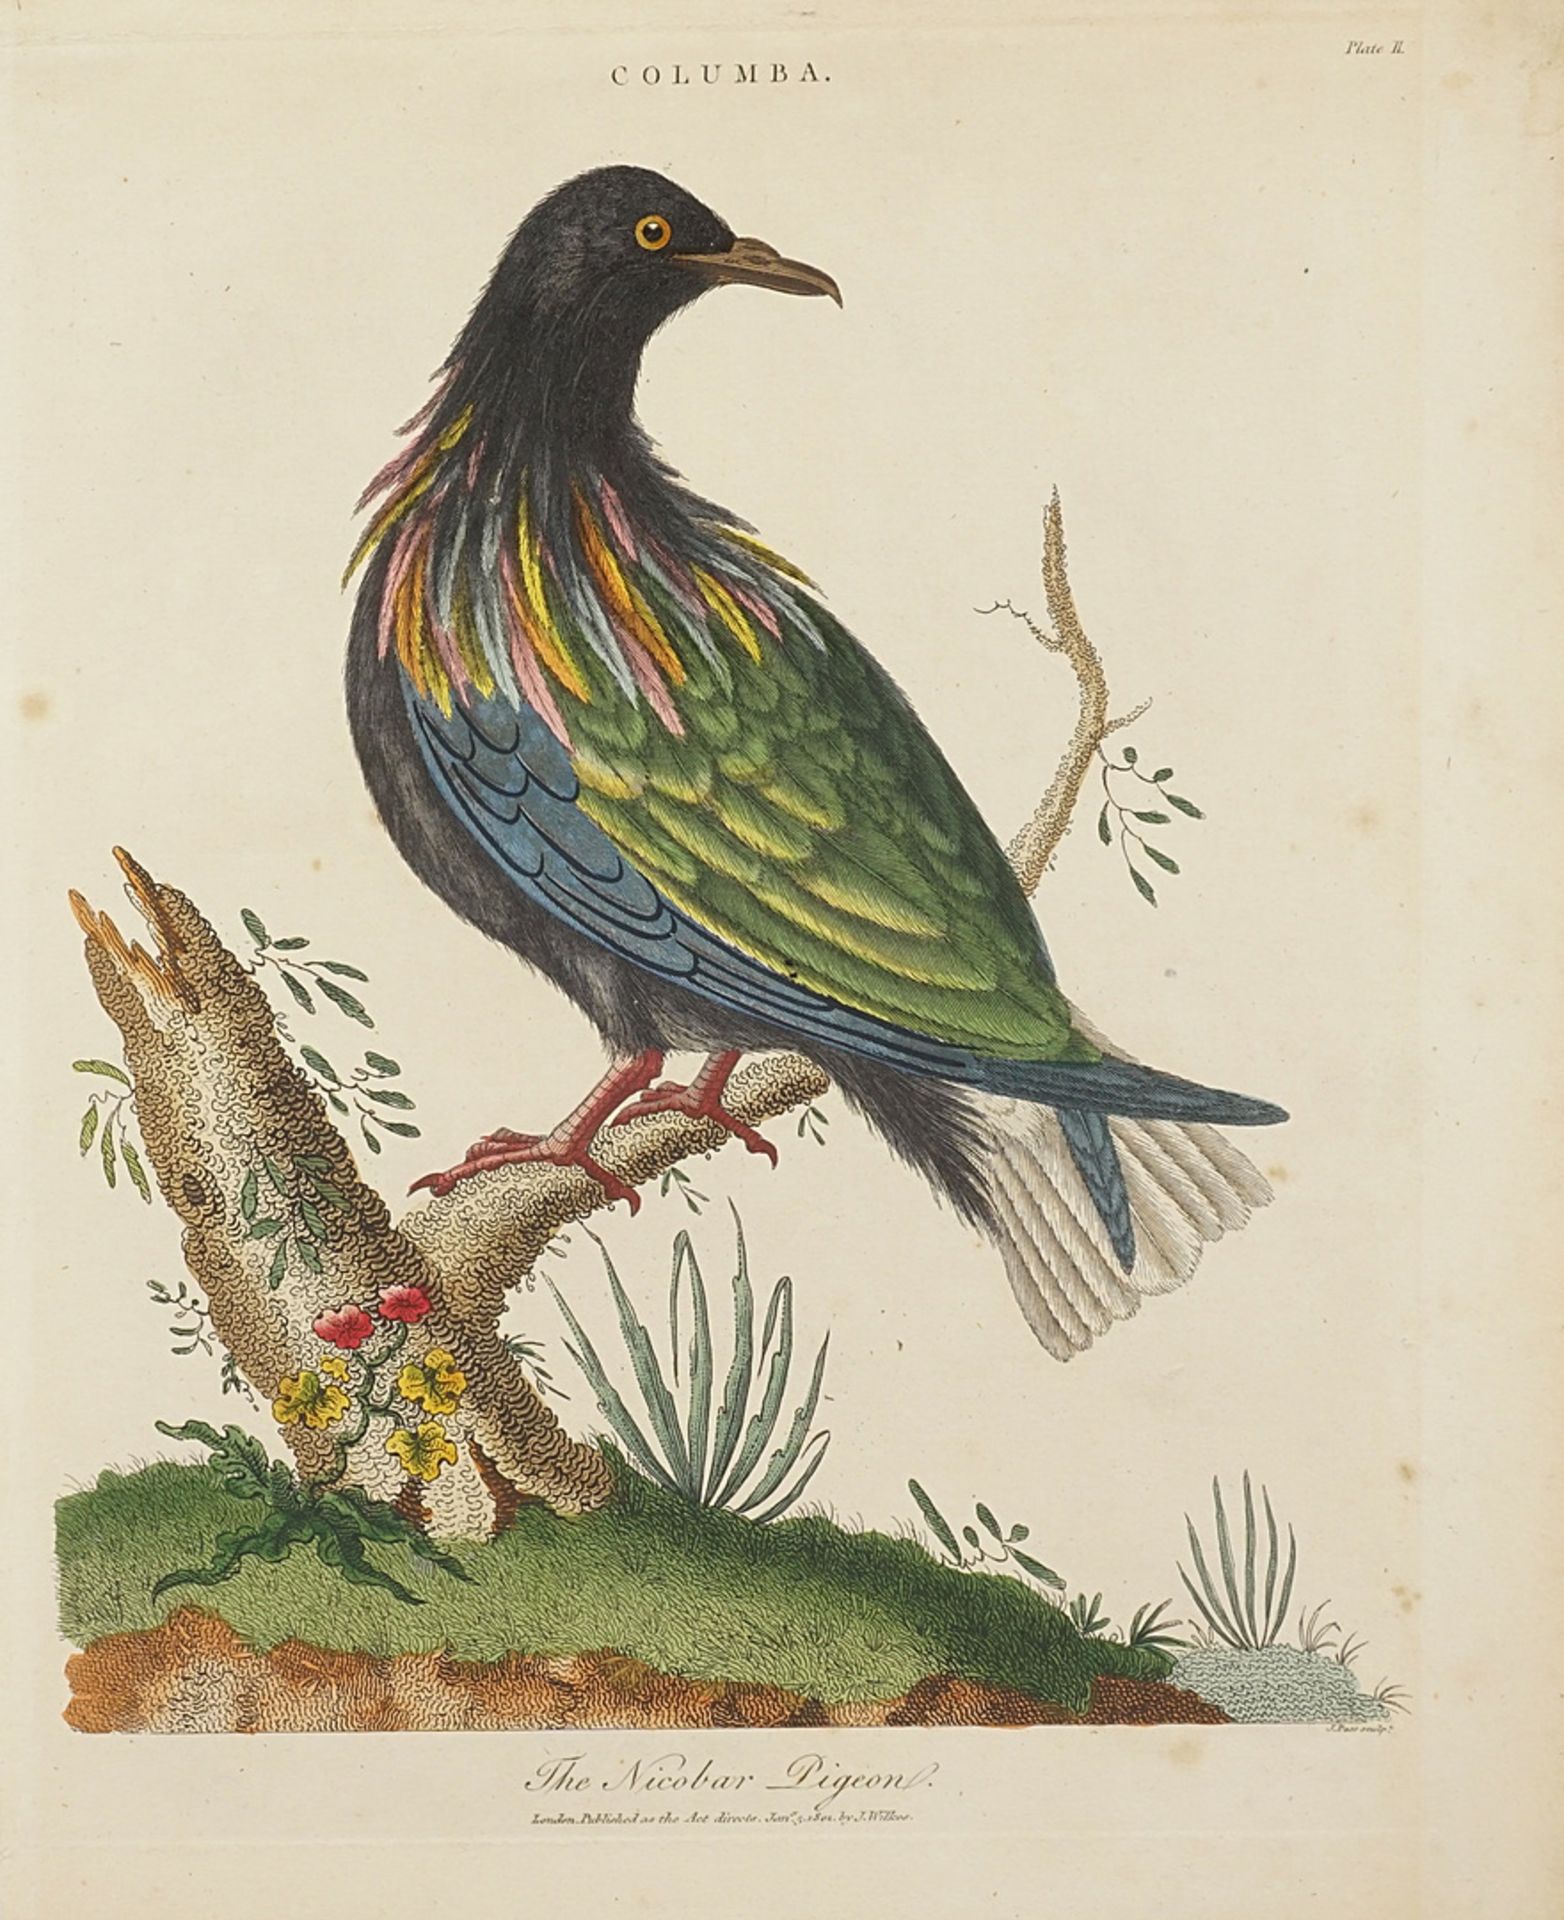 J. Pass, "The Nicobar Pigeon"